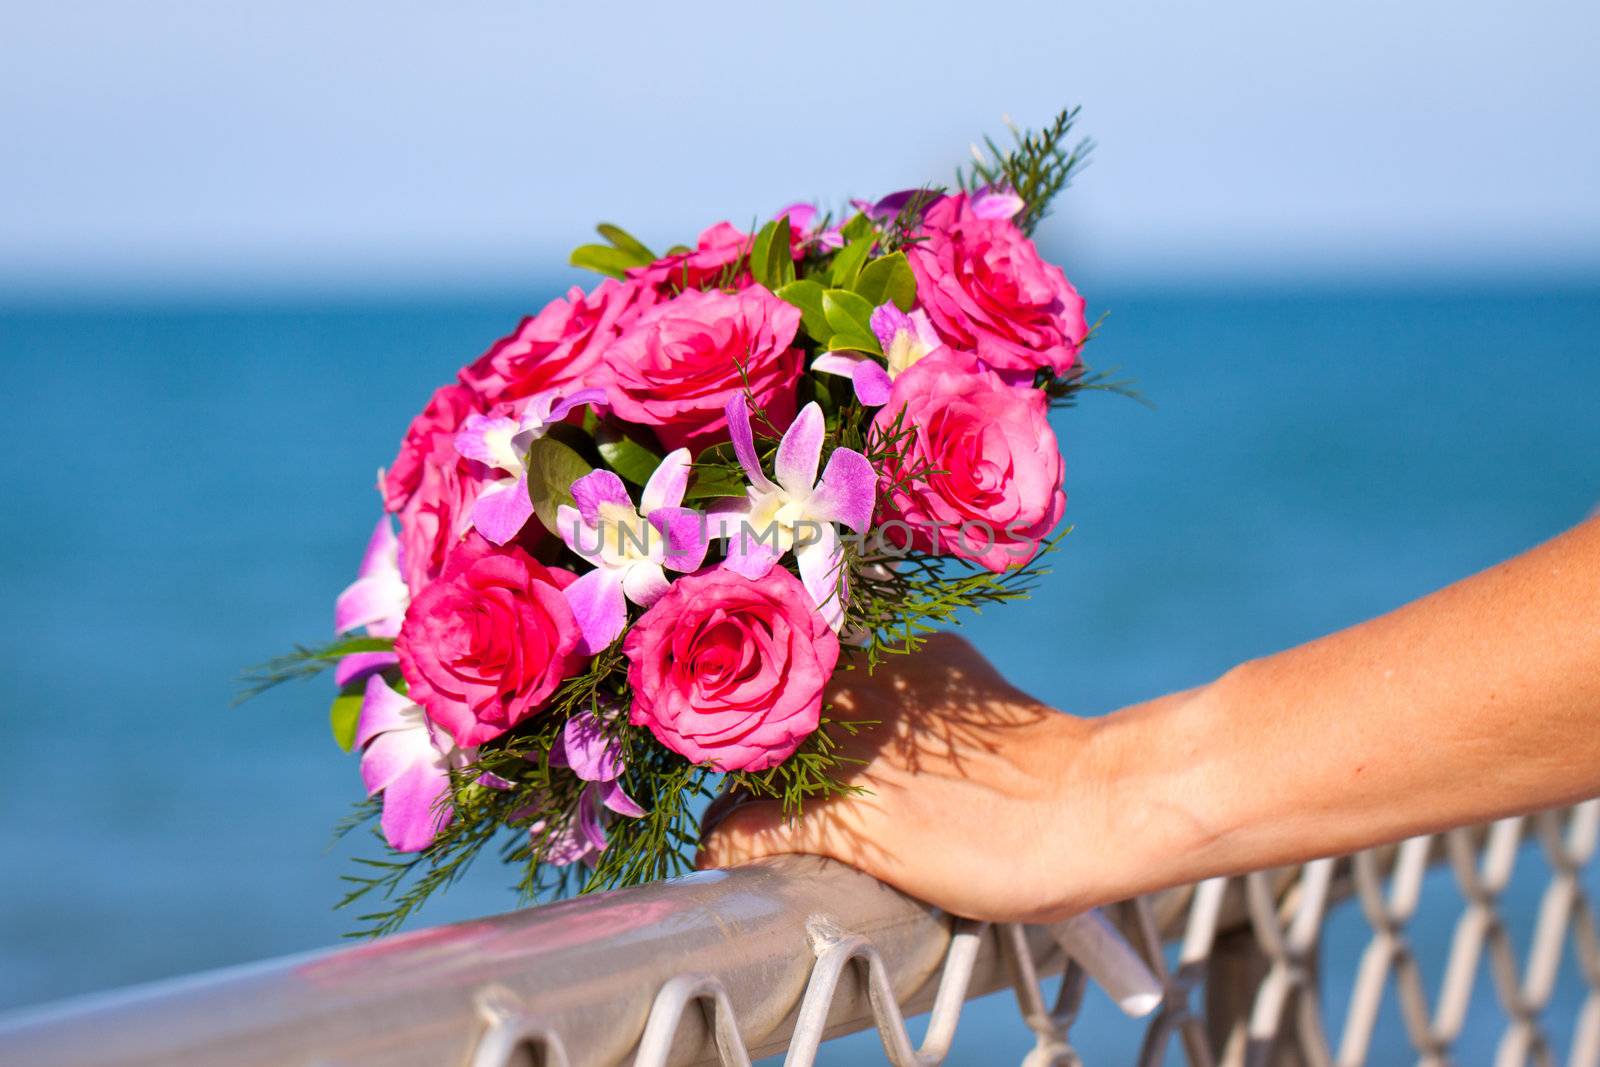 Beautiful wedding bouquet held by bride by Jaykayl